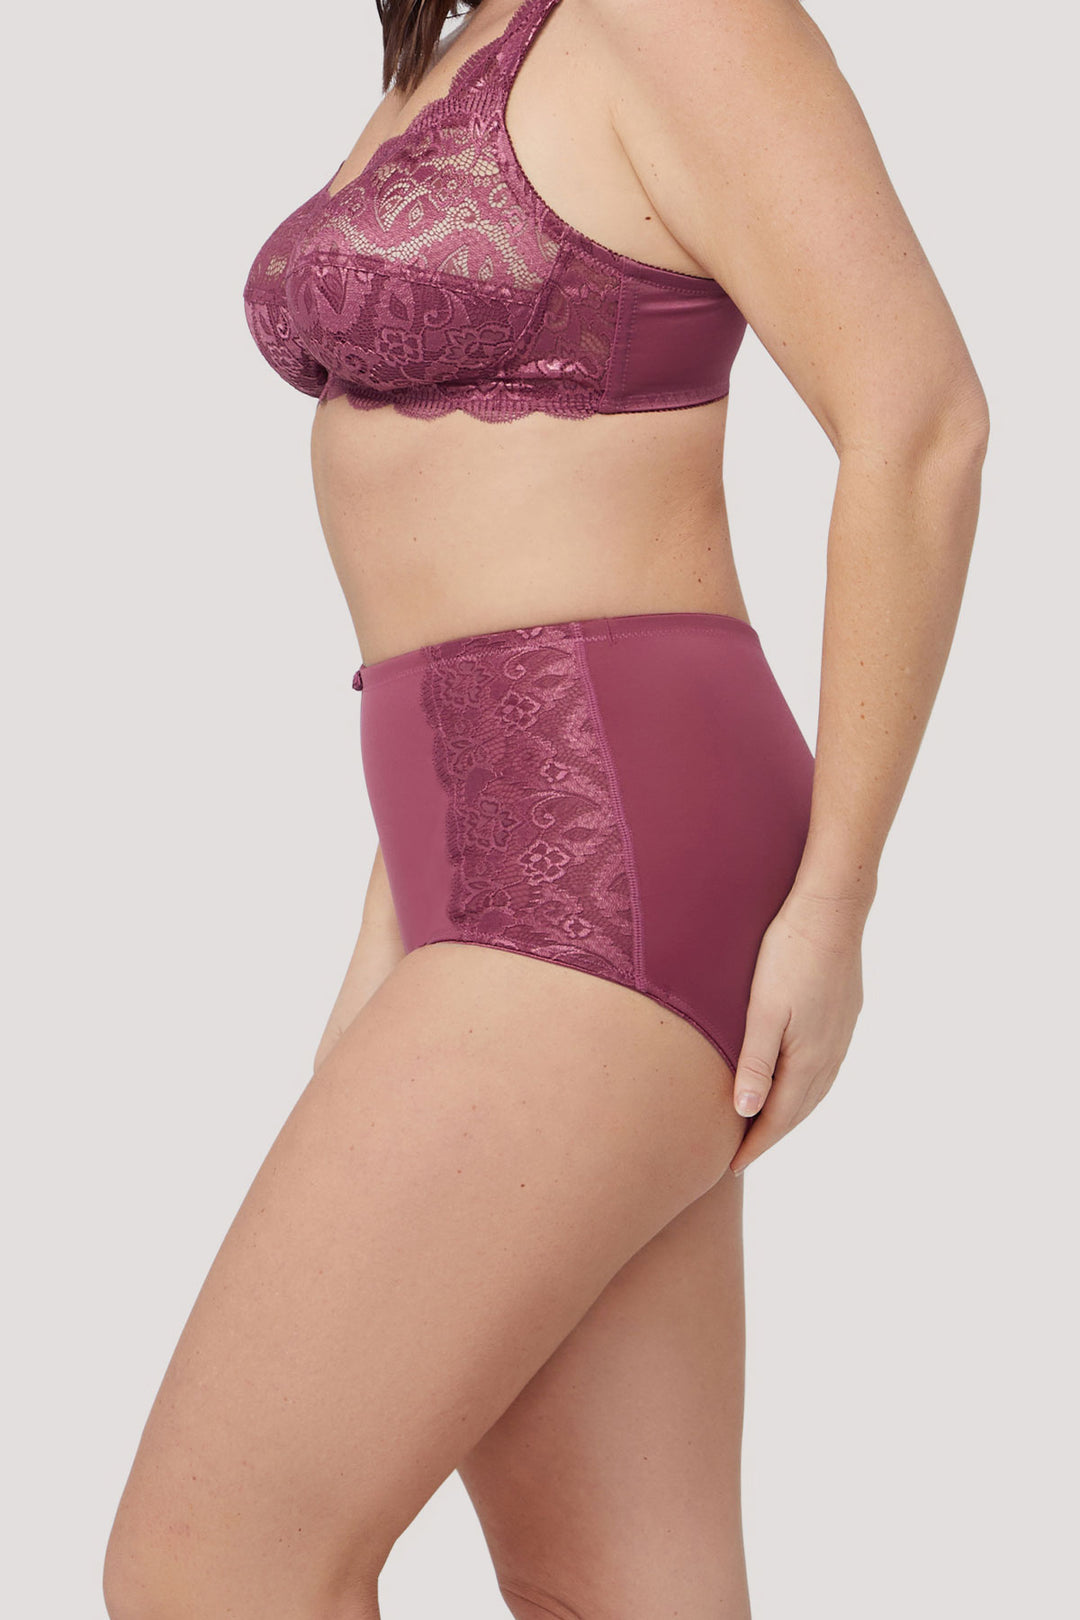 Women's Lace Full coverage underwear | Ruby Lace Retro Brief | Bella Bodies Australia | Rose | Side